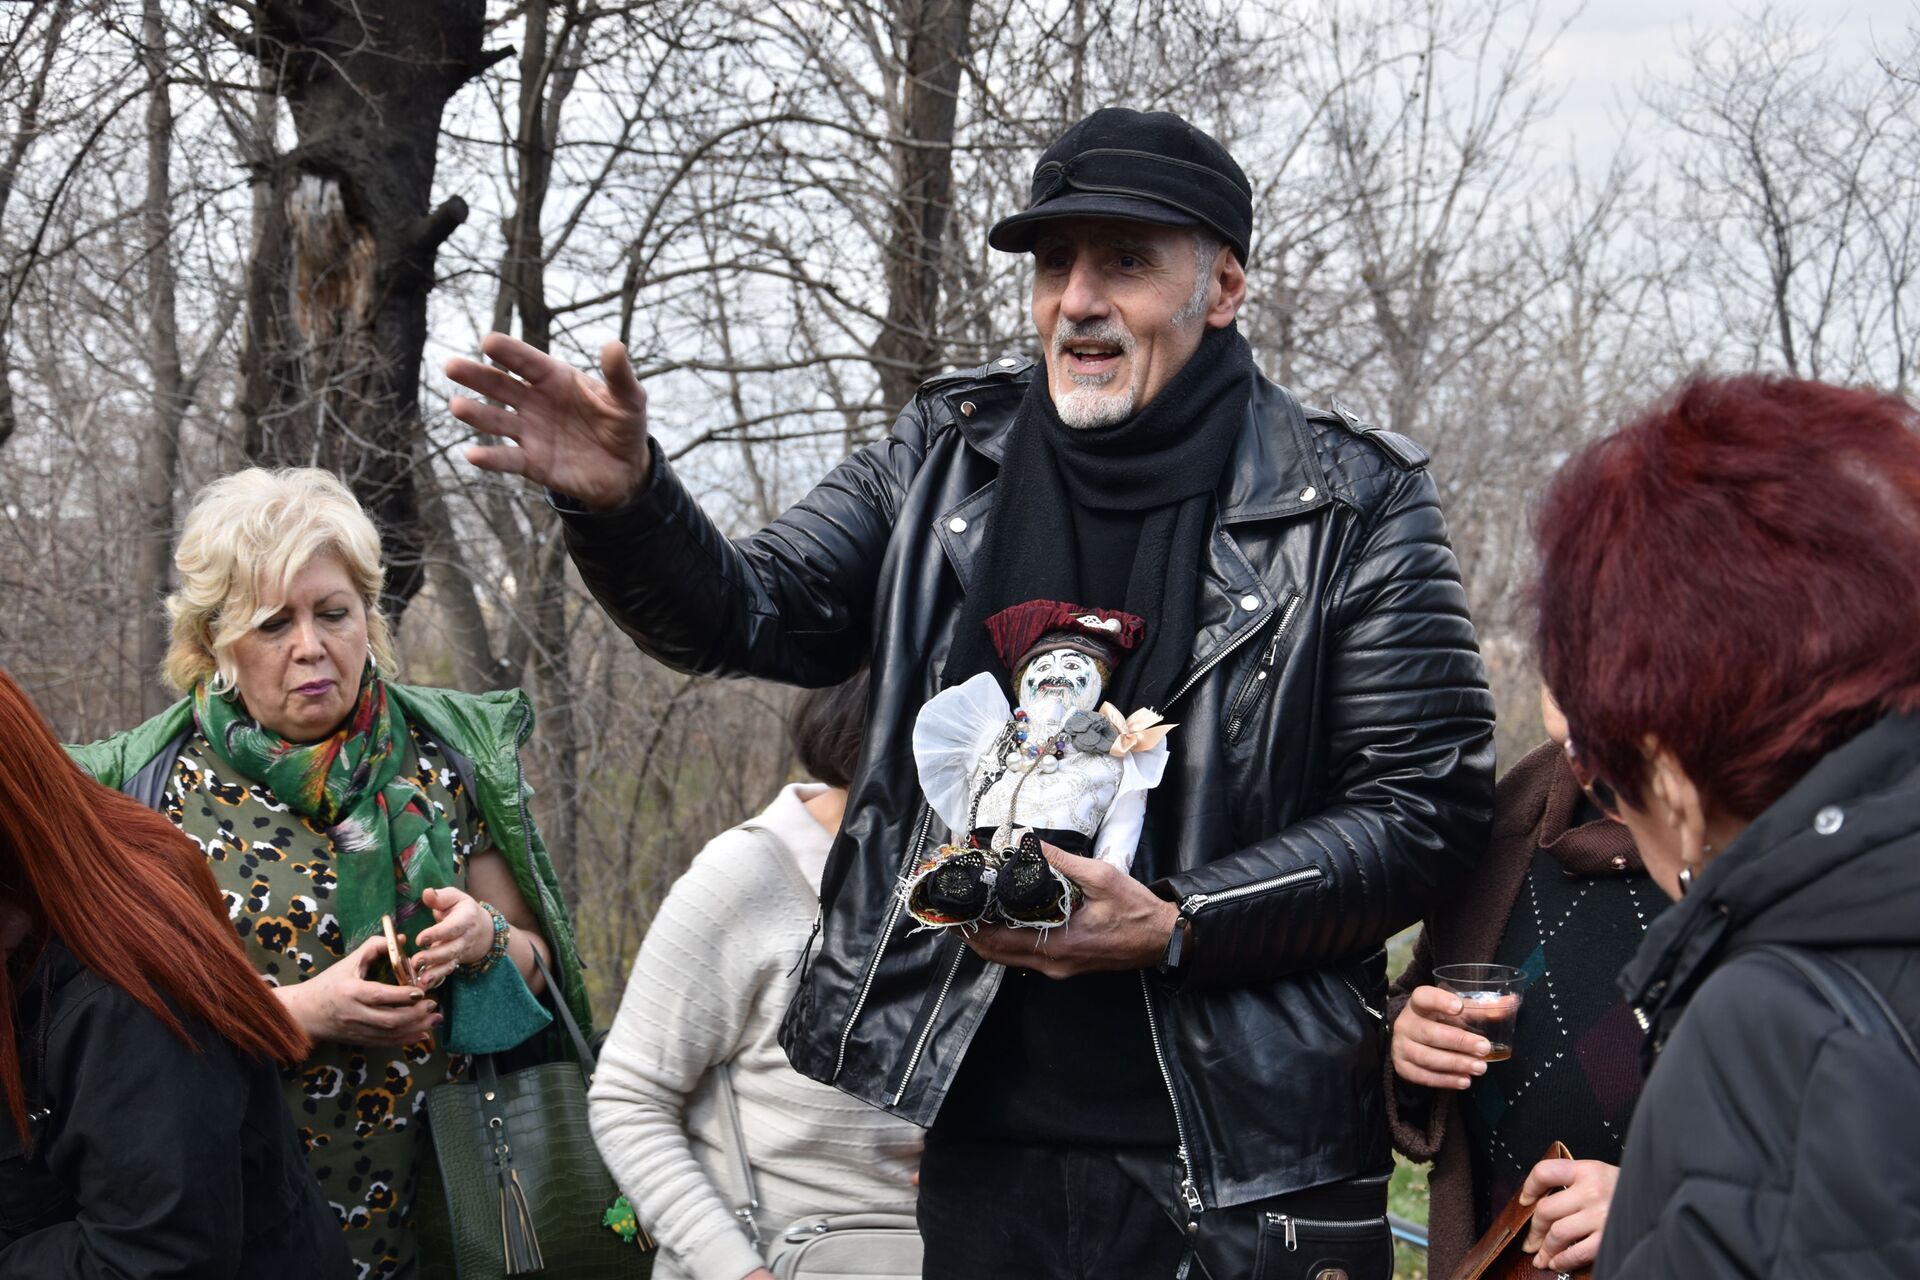 Параджанов ожил в Грузии: в честь режиссера в Тбилиси посадили гранатовое дерево - Sputnik Грузия, 1920, 17.03.2021